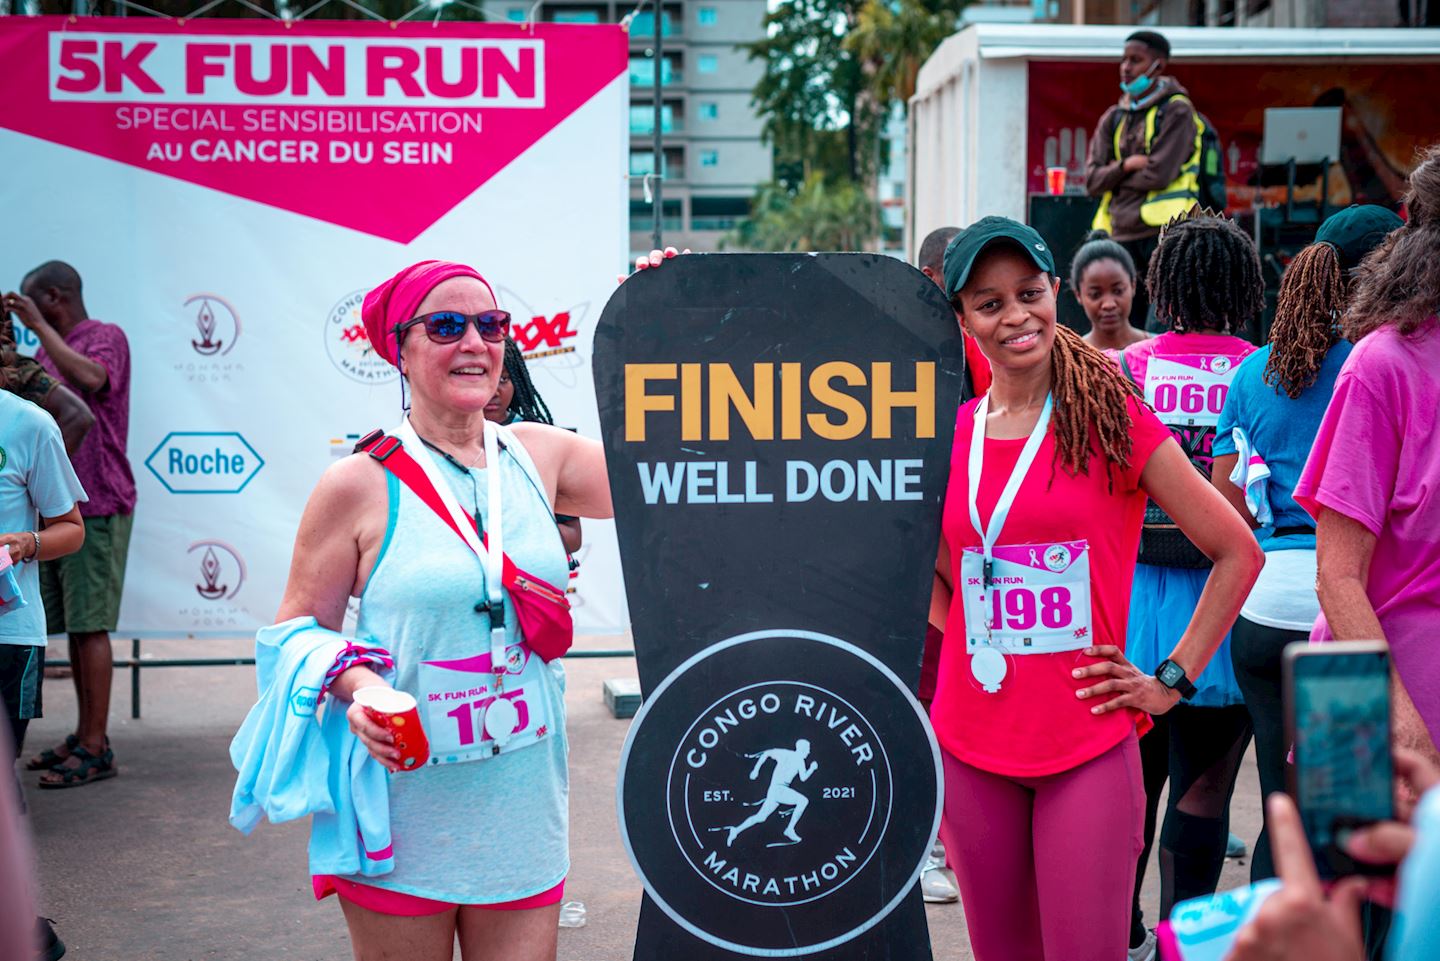 breast cancer run 5k fun run